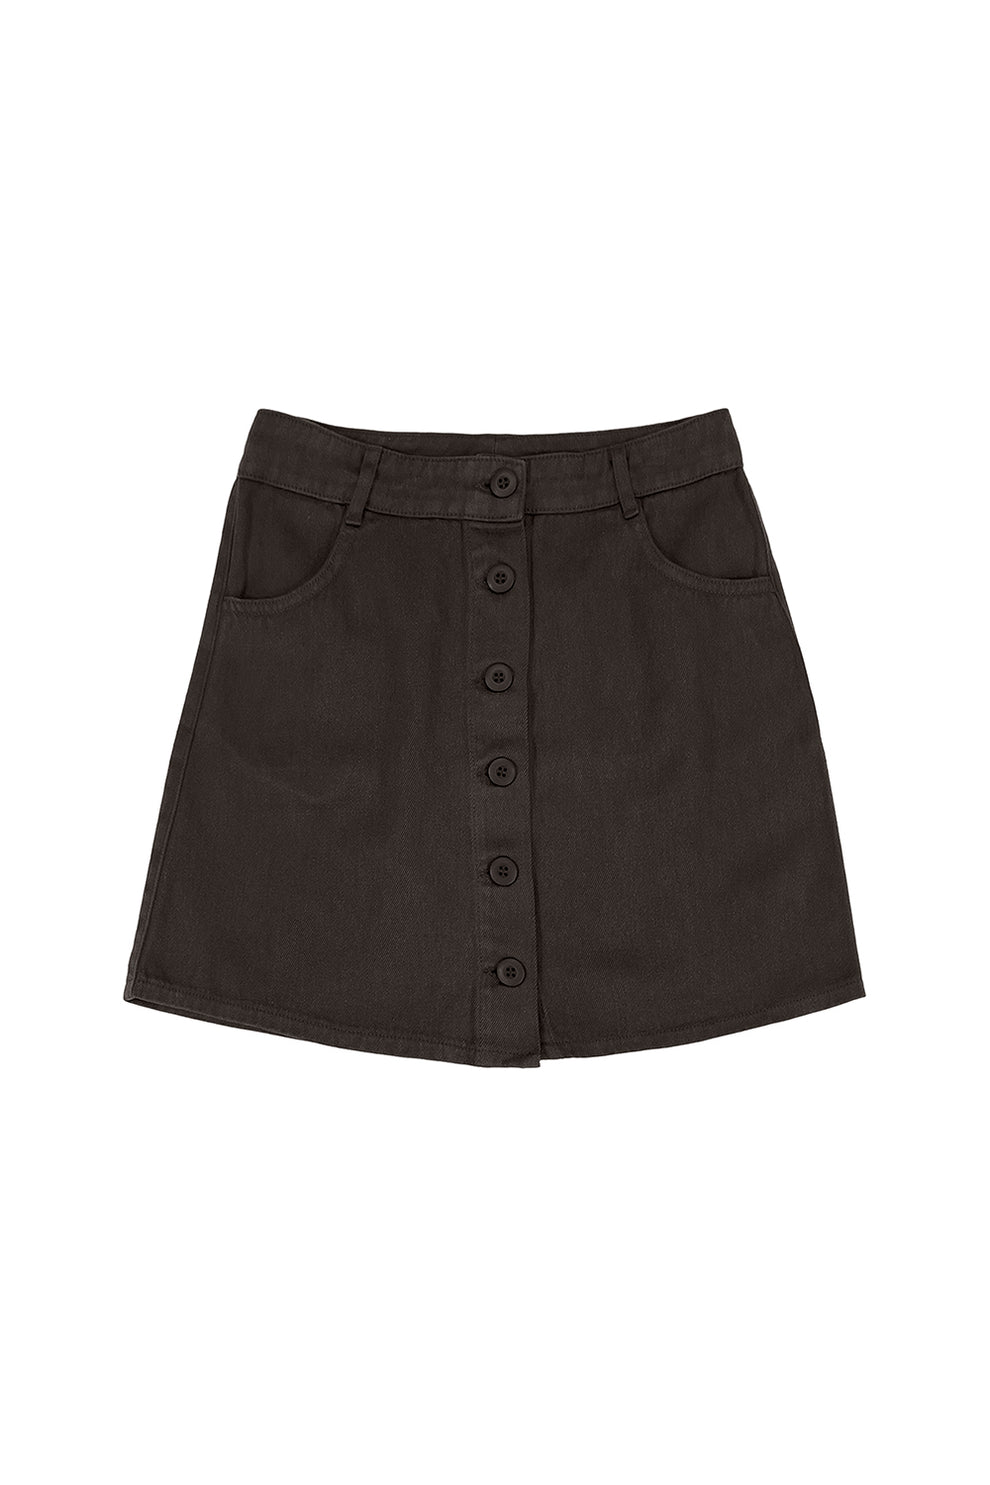 Vassar Skirt | Jungmaven Hemp Clothing